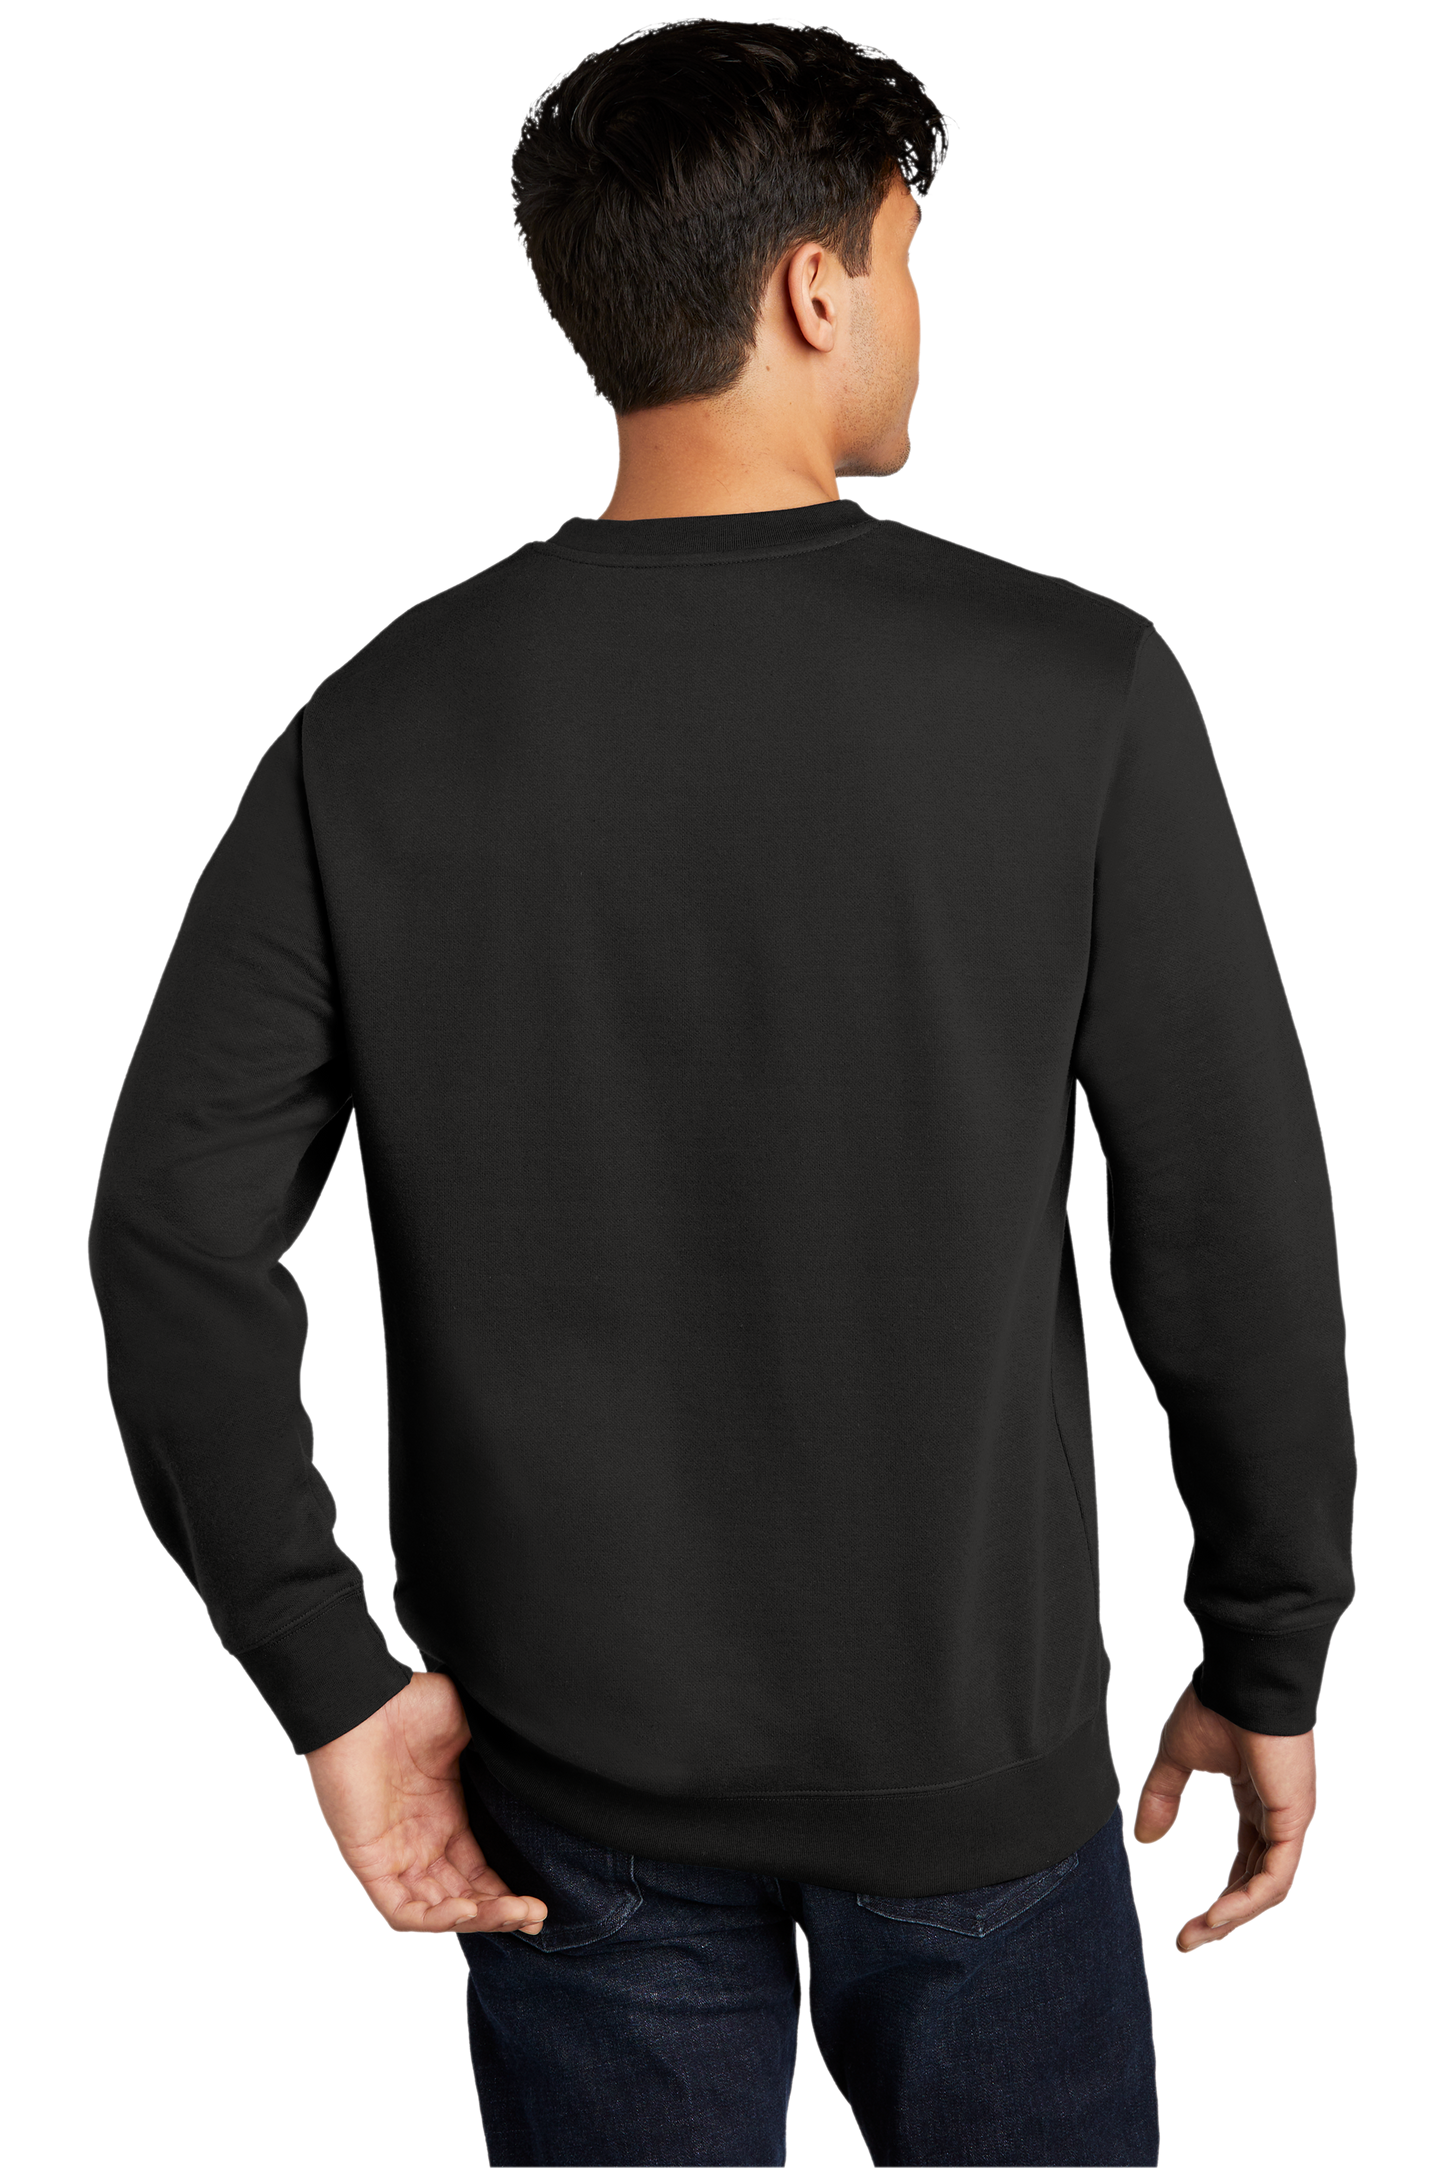 Black on Black Crewneck Sweatshirt